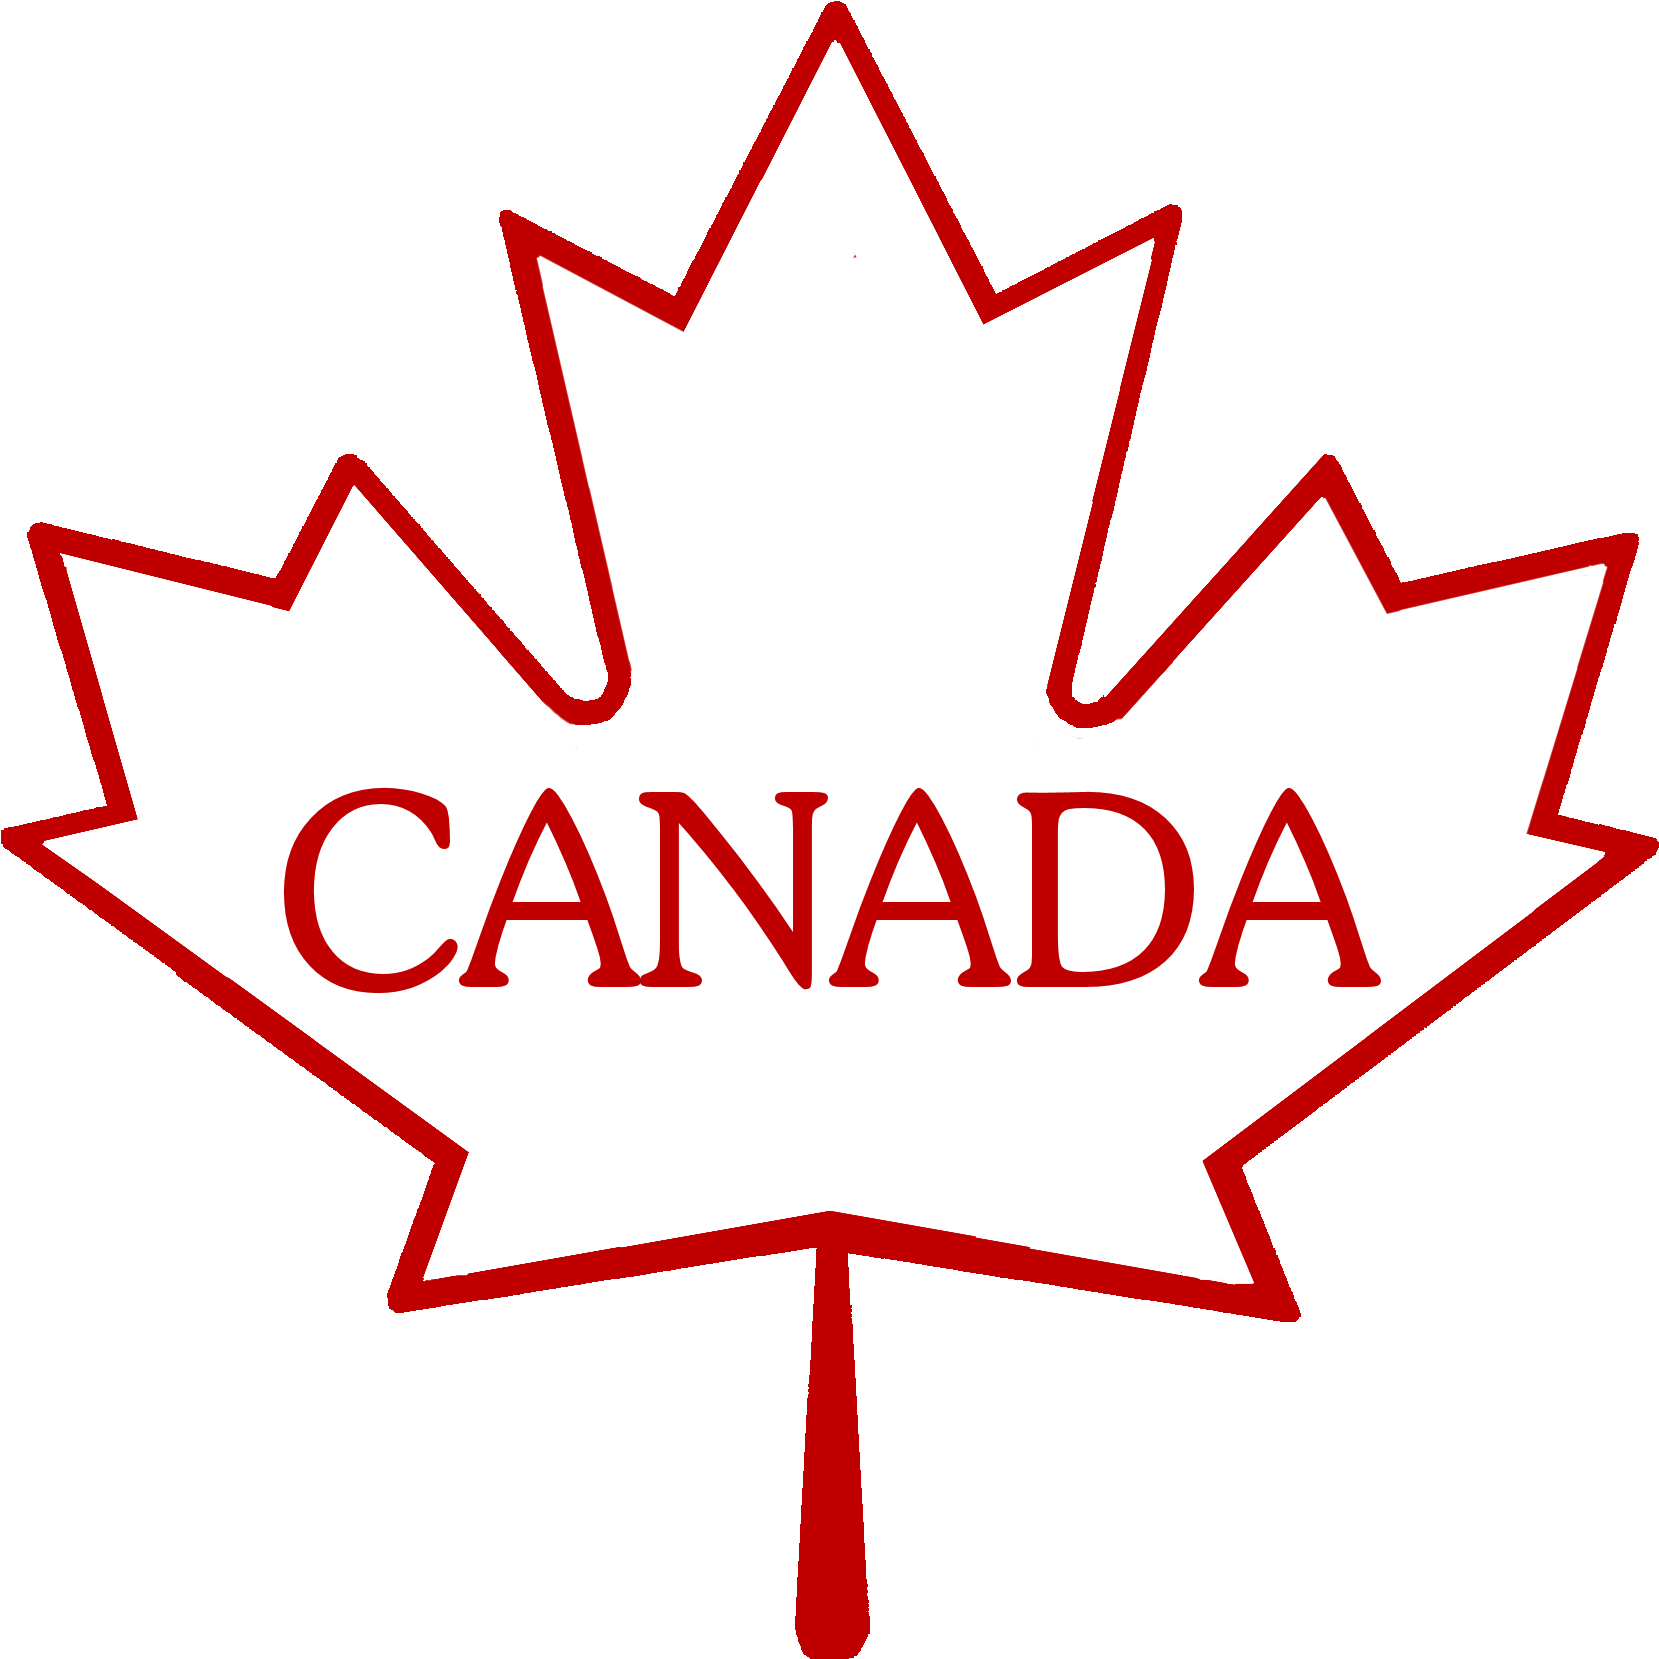 Canadian Maple Leaf - Canadian Flag Maple Leaf (2000x2000)